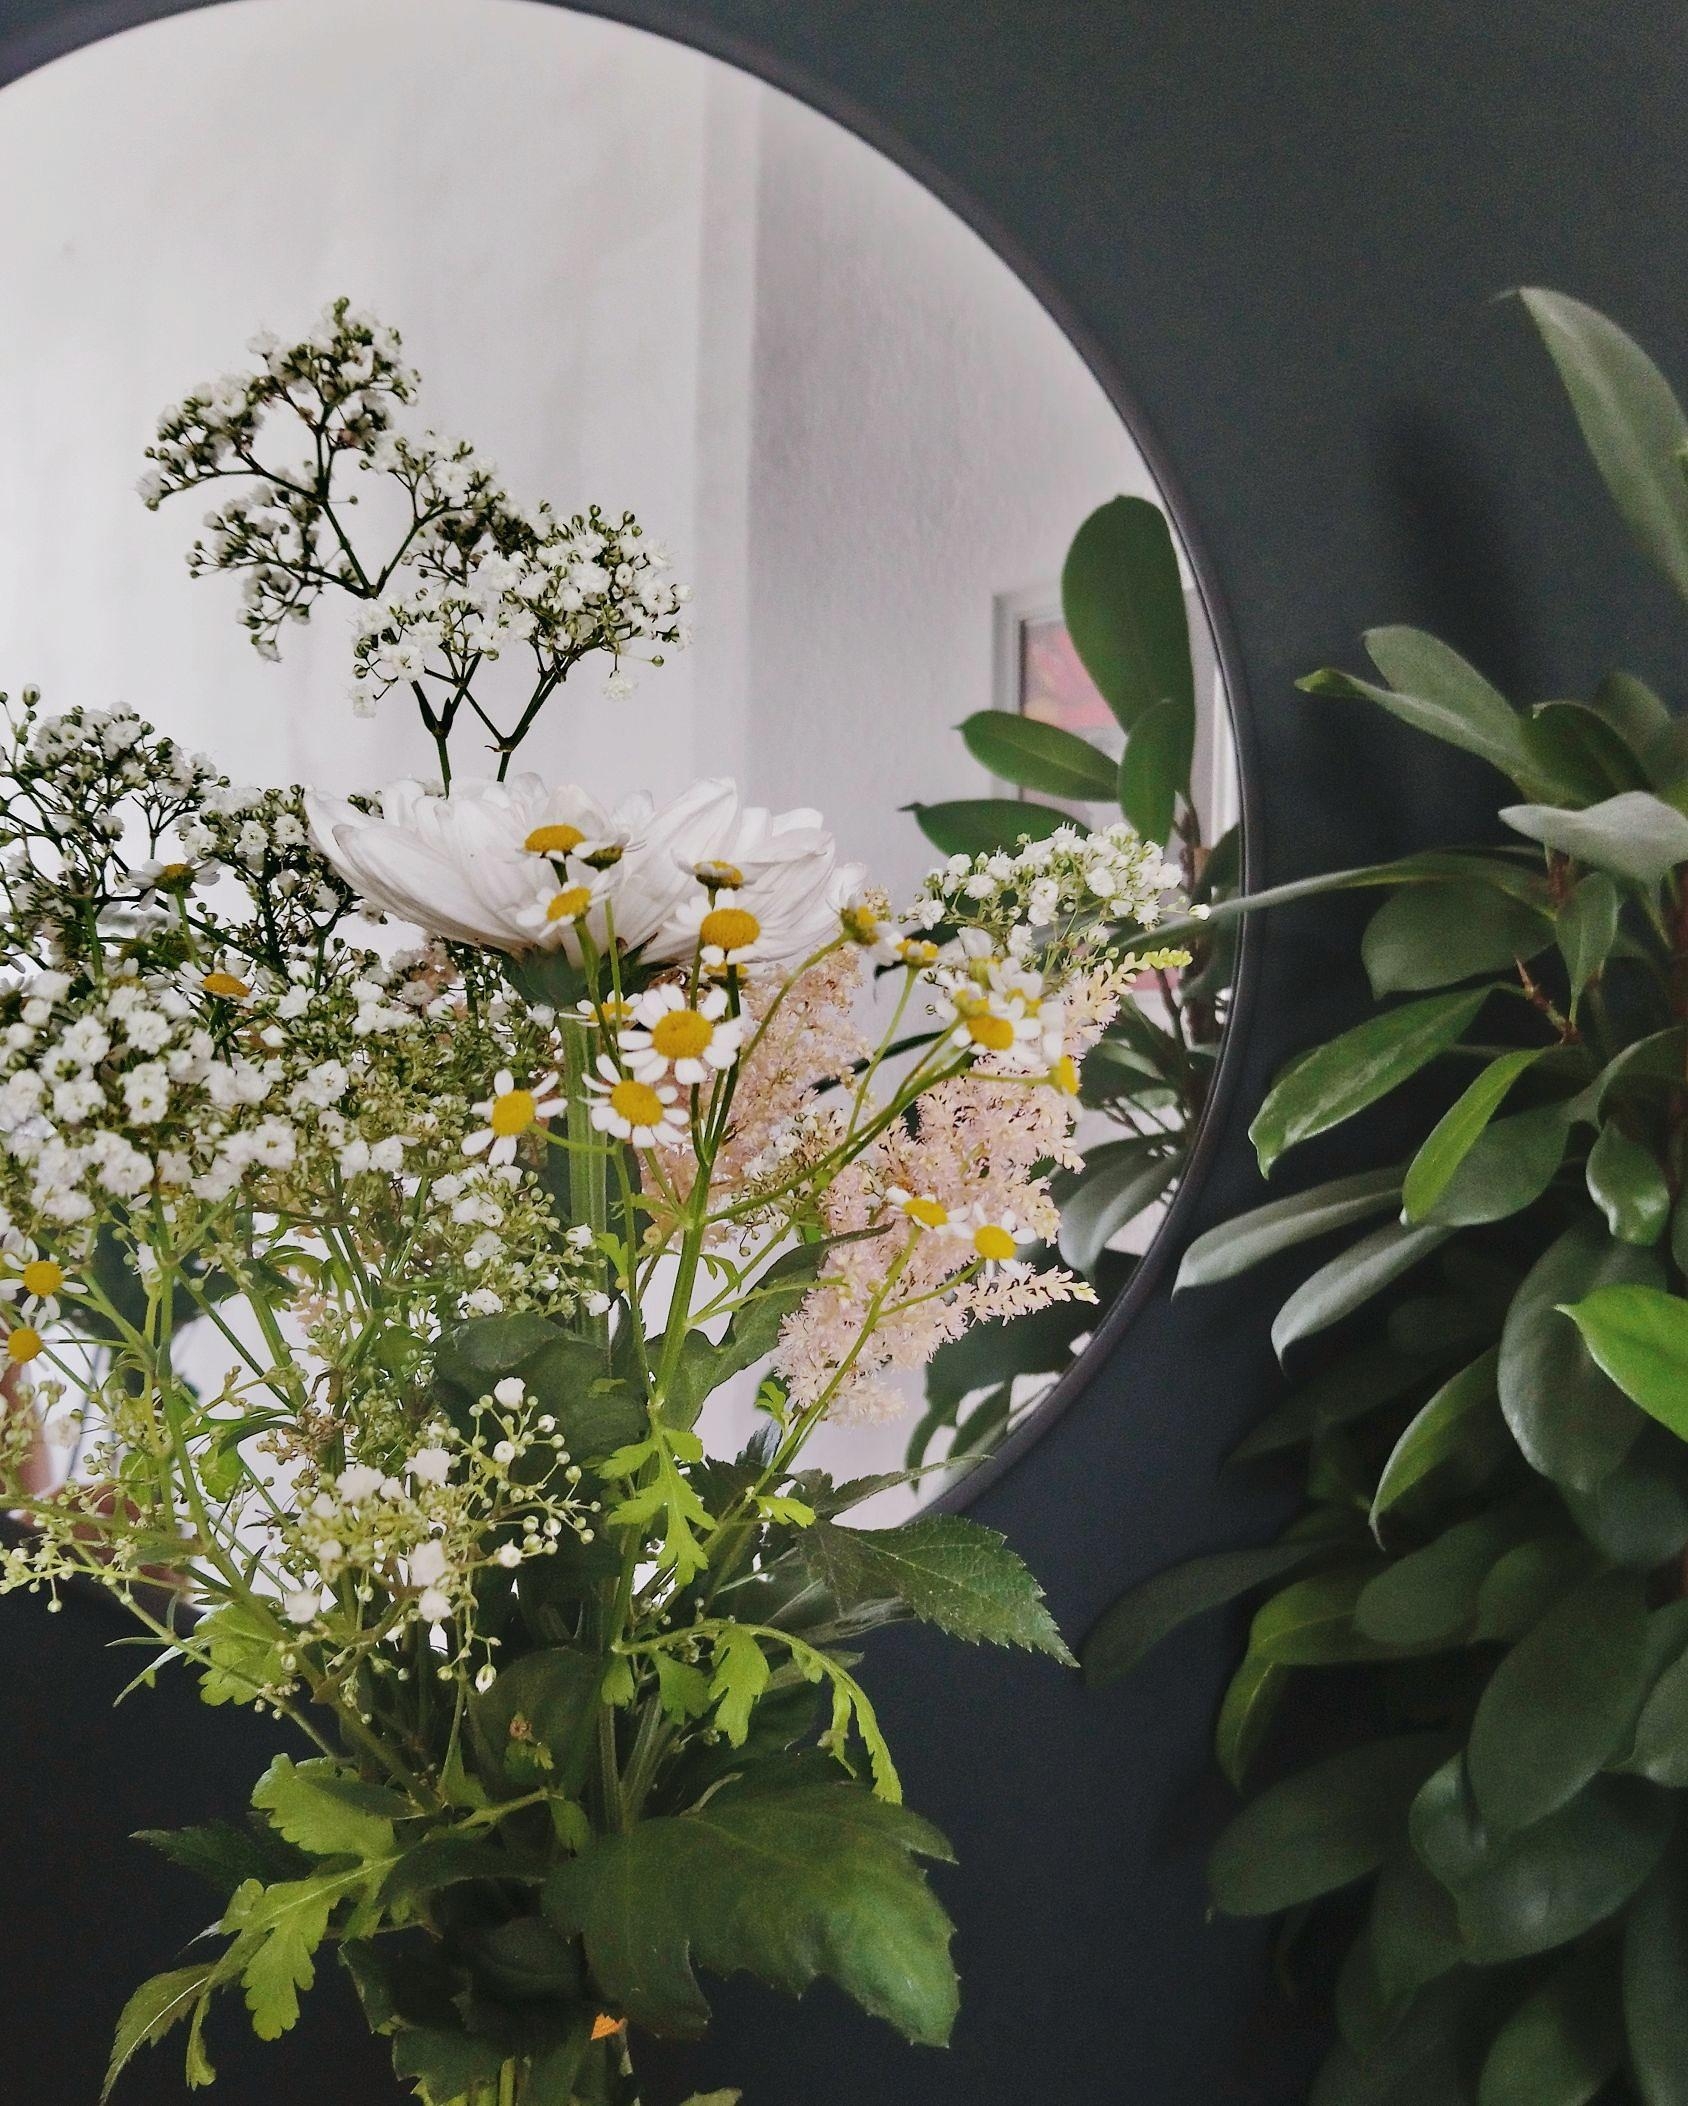 Neue Blümchen im Haus!
#interior #flower #flowerpower #love